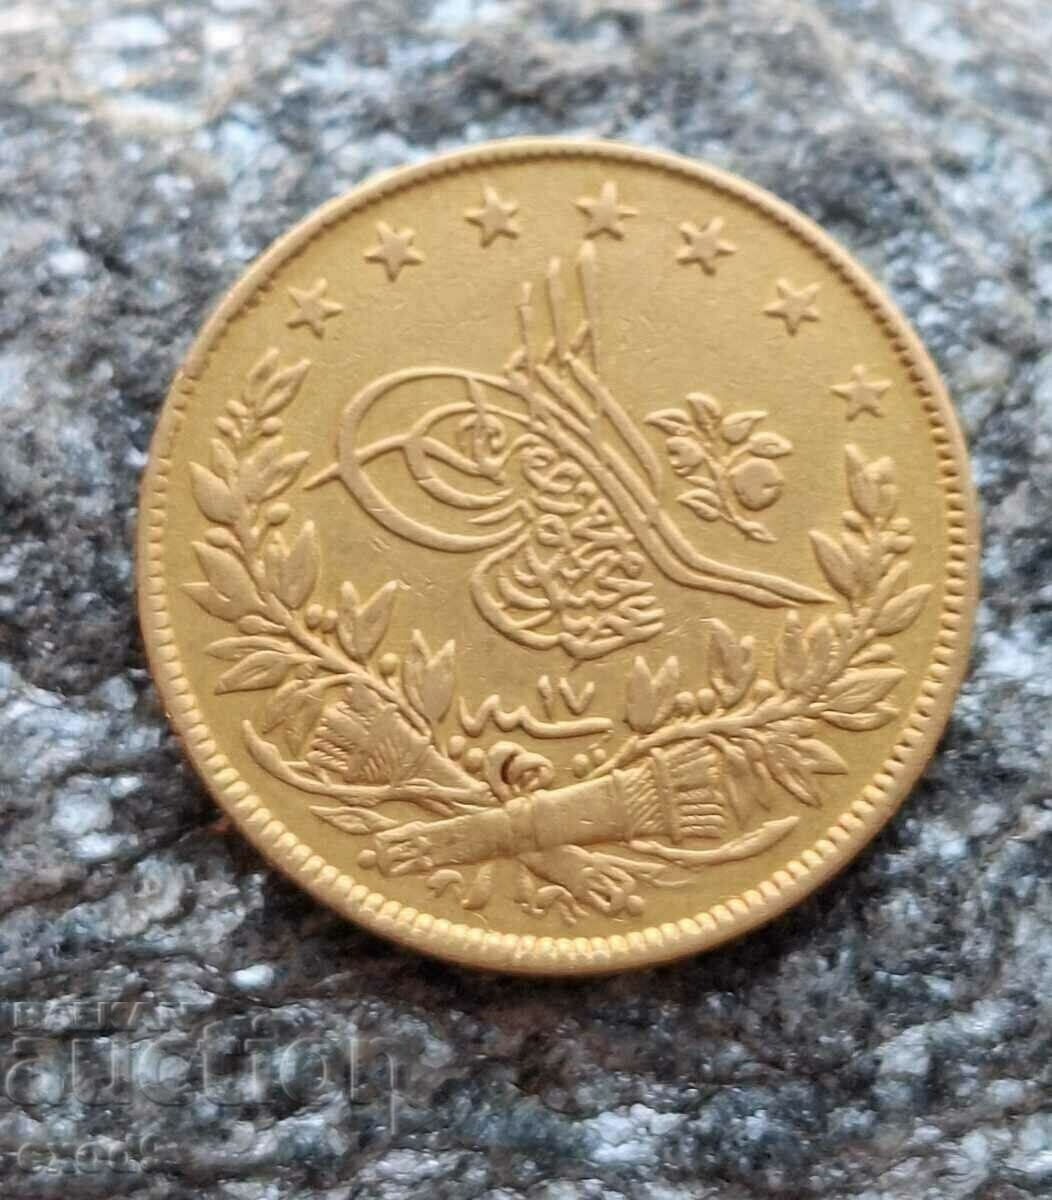 Gold Turkish Ottoman Coin, 100 Kurusha 1255 / 17